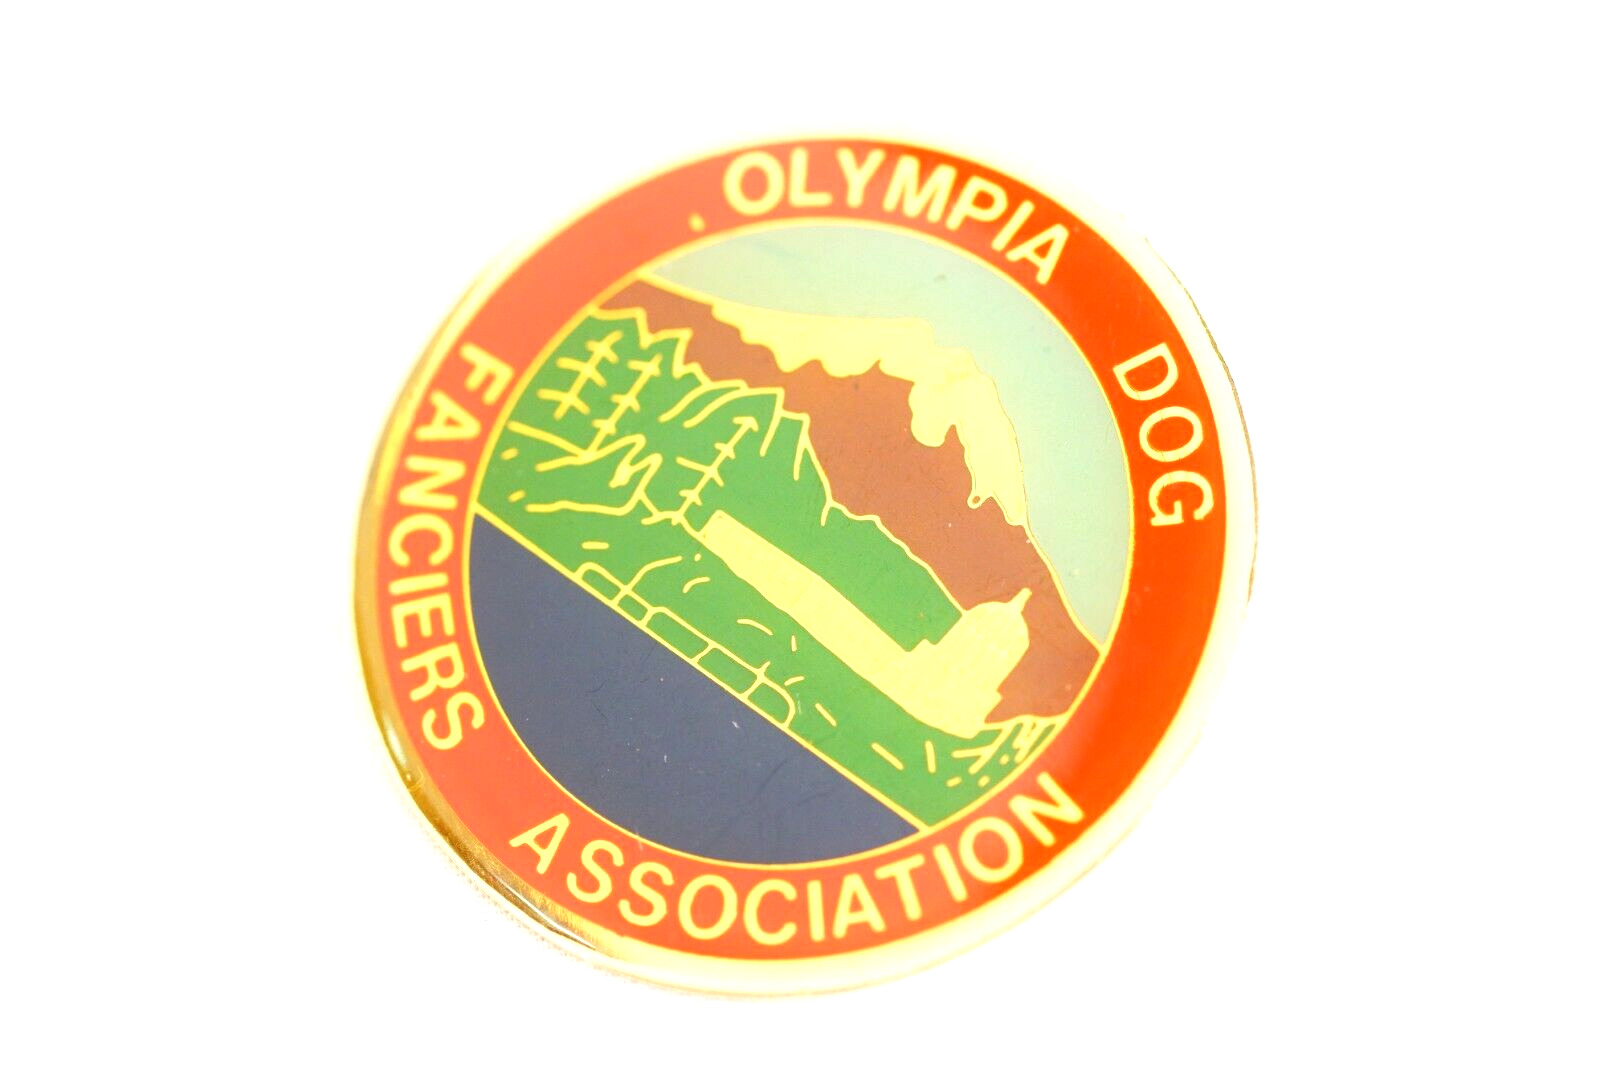 Olympia Dog Fanciers Association Kennel Club Canine Dog Lapel Pin